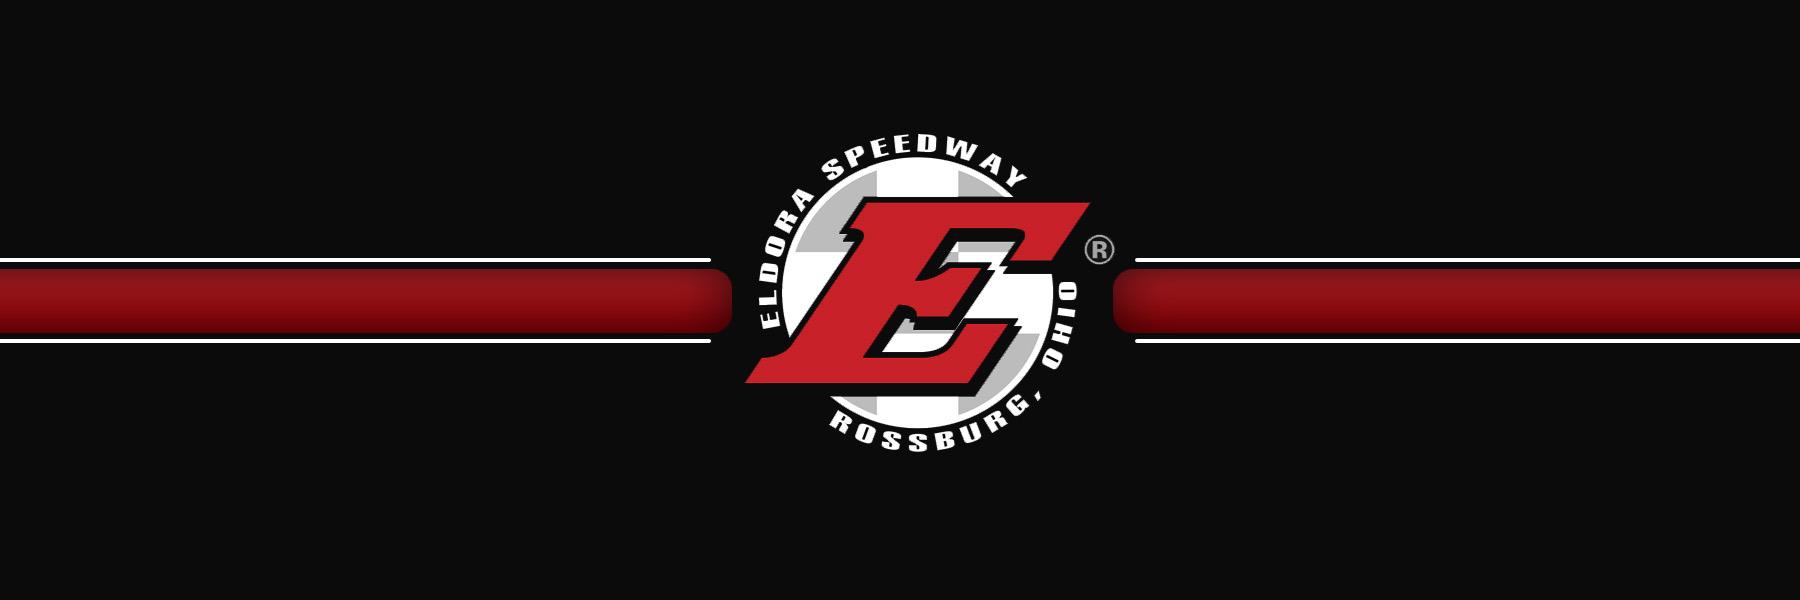 7/12/2018 - Eldora Speedway